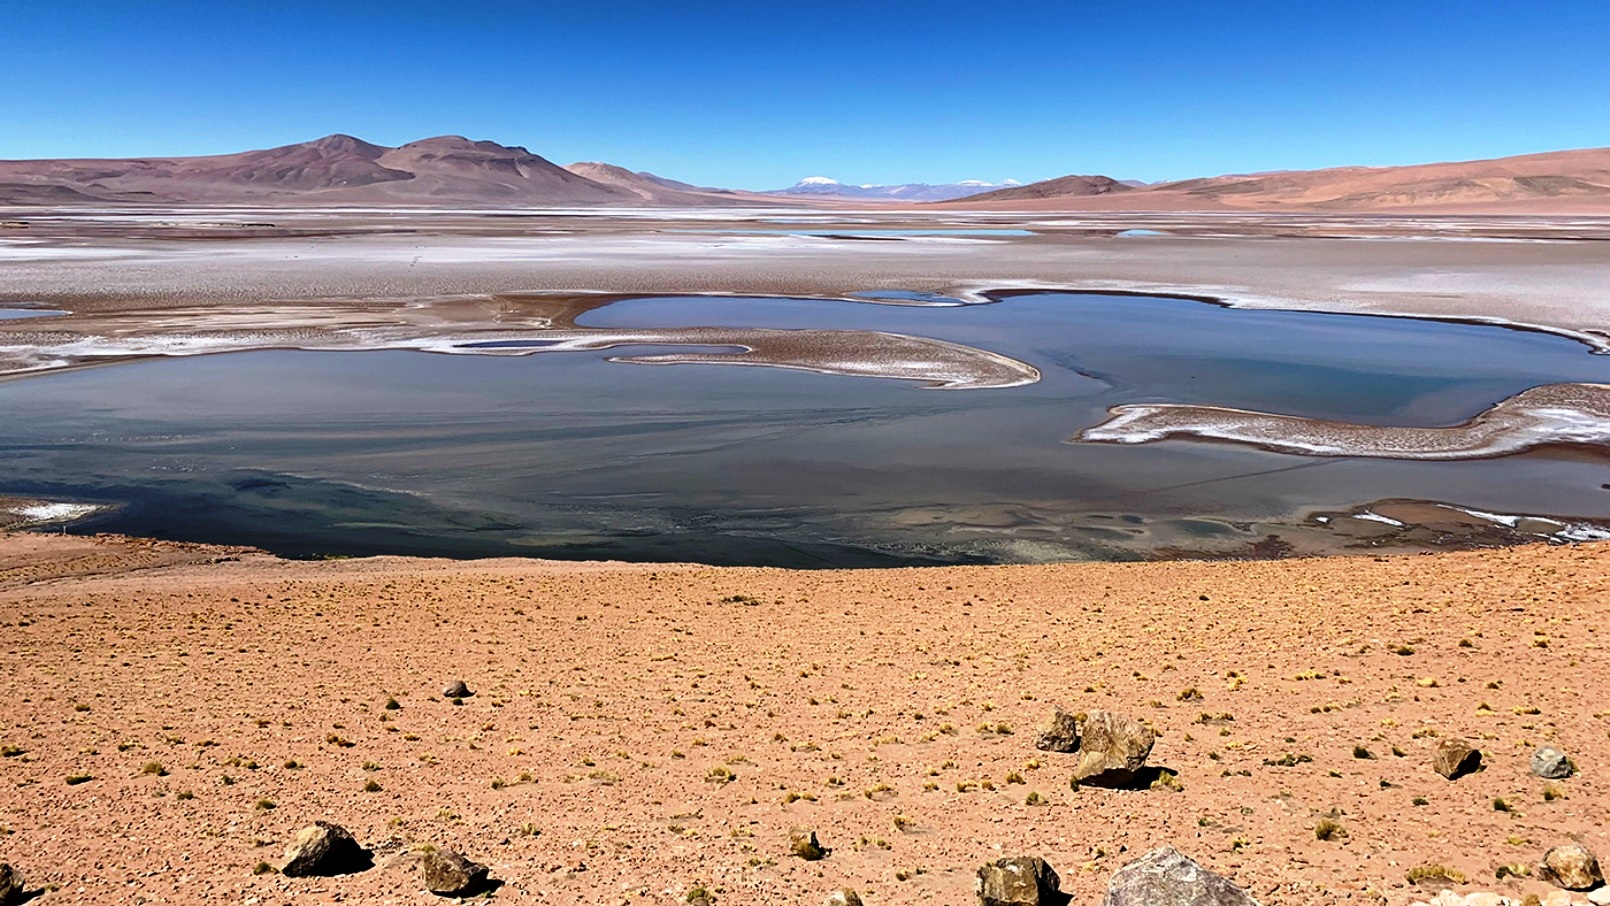 Rempli de lacs saumâtres, le plateau de Quisquiro dans l'Altiplano d'Amérique du Sud, au Chili, représente le type de paysage que les scientifiques pensent avoir existé il y a des milliards d'années sur Mars, dans le cratère Gale, que le rover Curiosity de la Nasa explore. © Maksym Bocharov